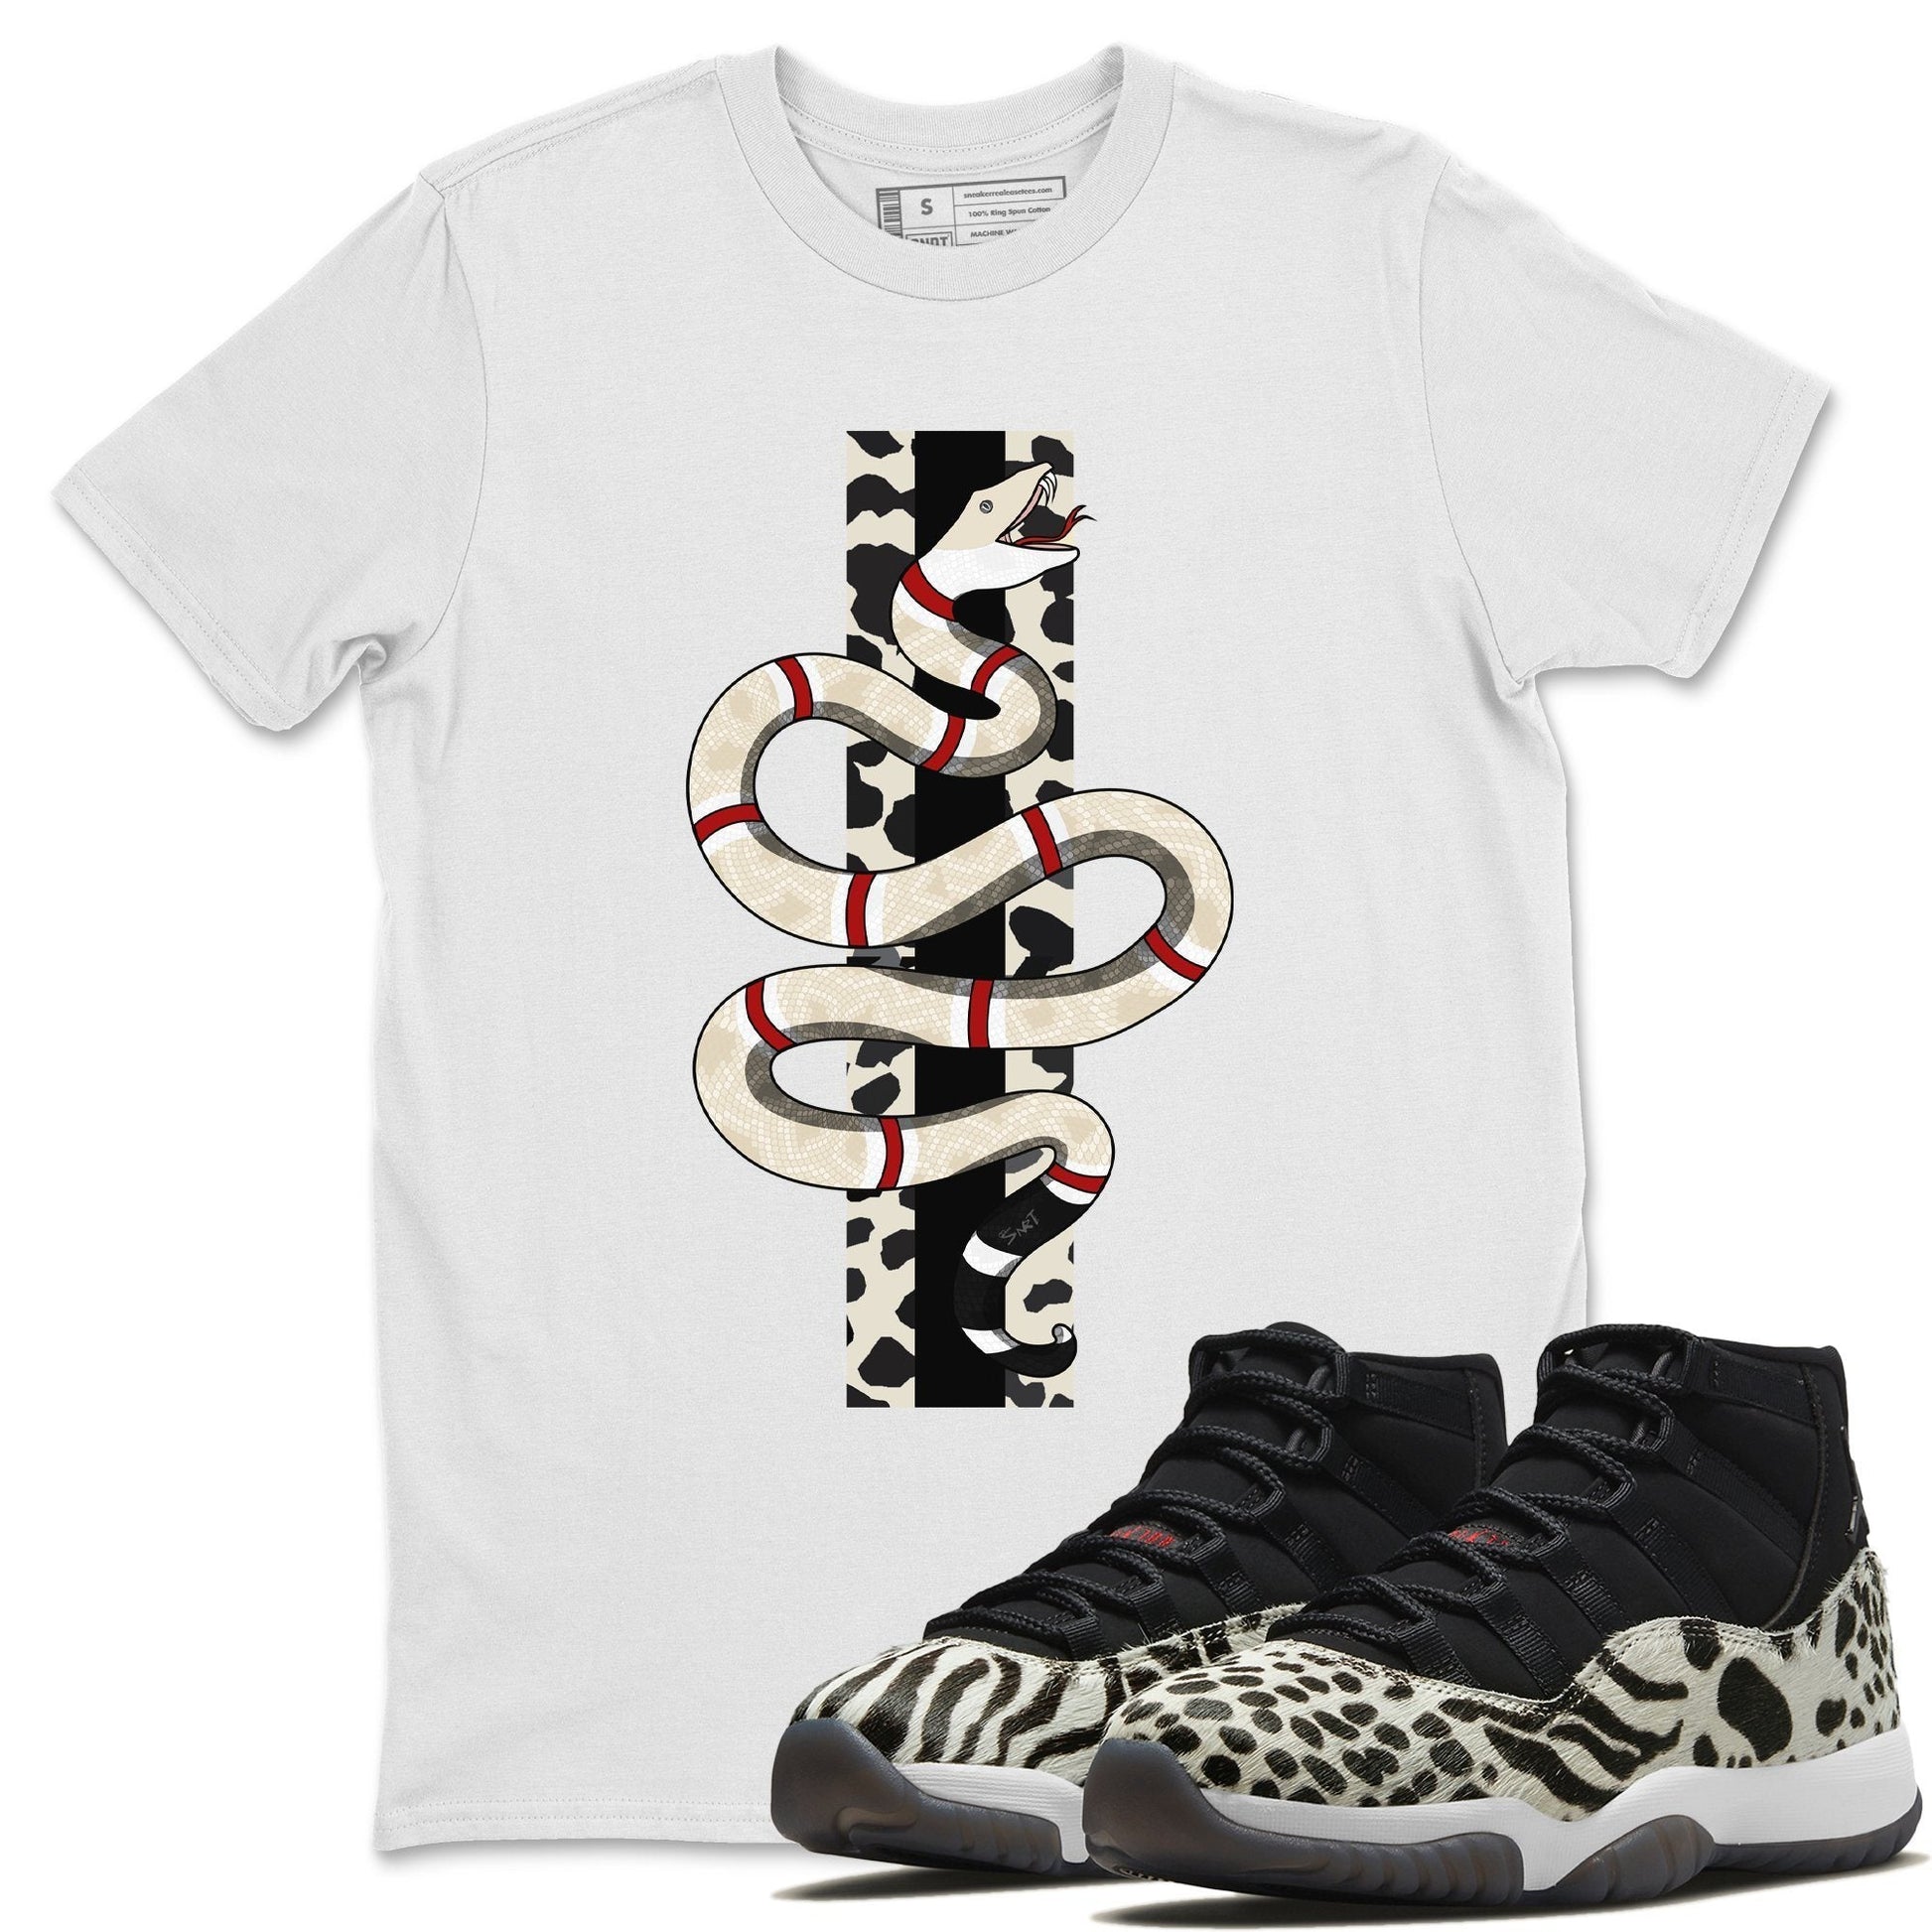 Jordan 11 Animal Instinct Sneaker Match Tees Snake Sneaker Tees Jordan 11 Animal Instinct Sneaker Release Tees Unisex Shirts